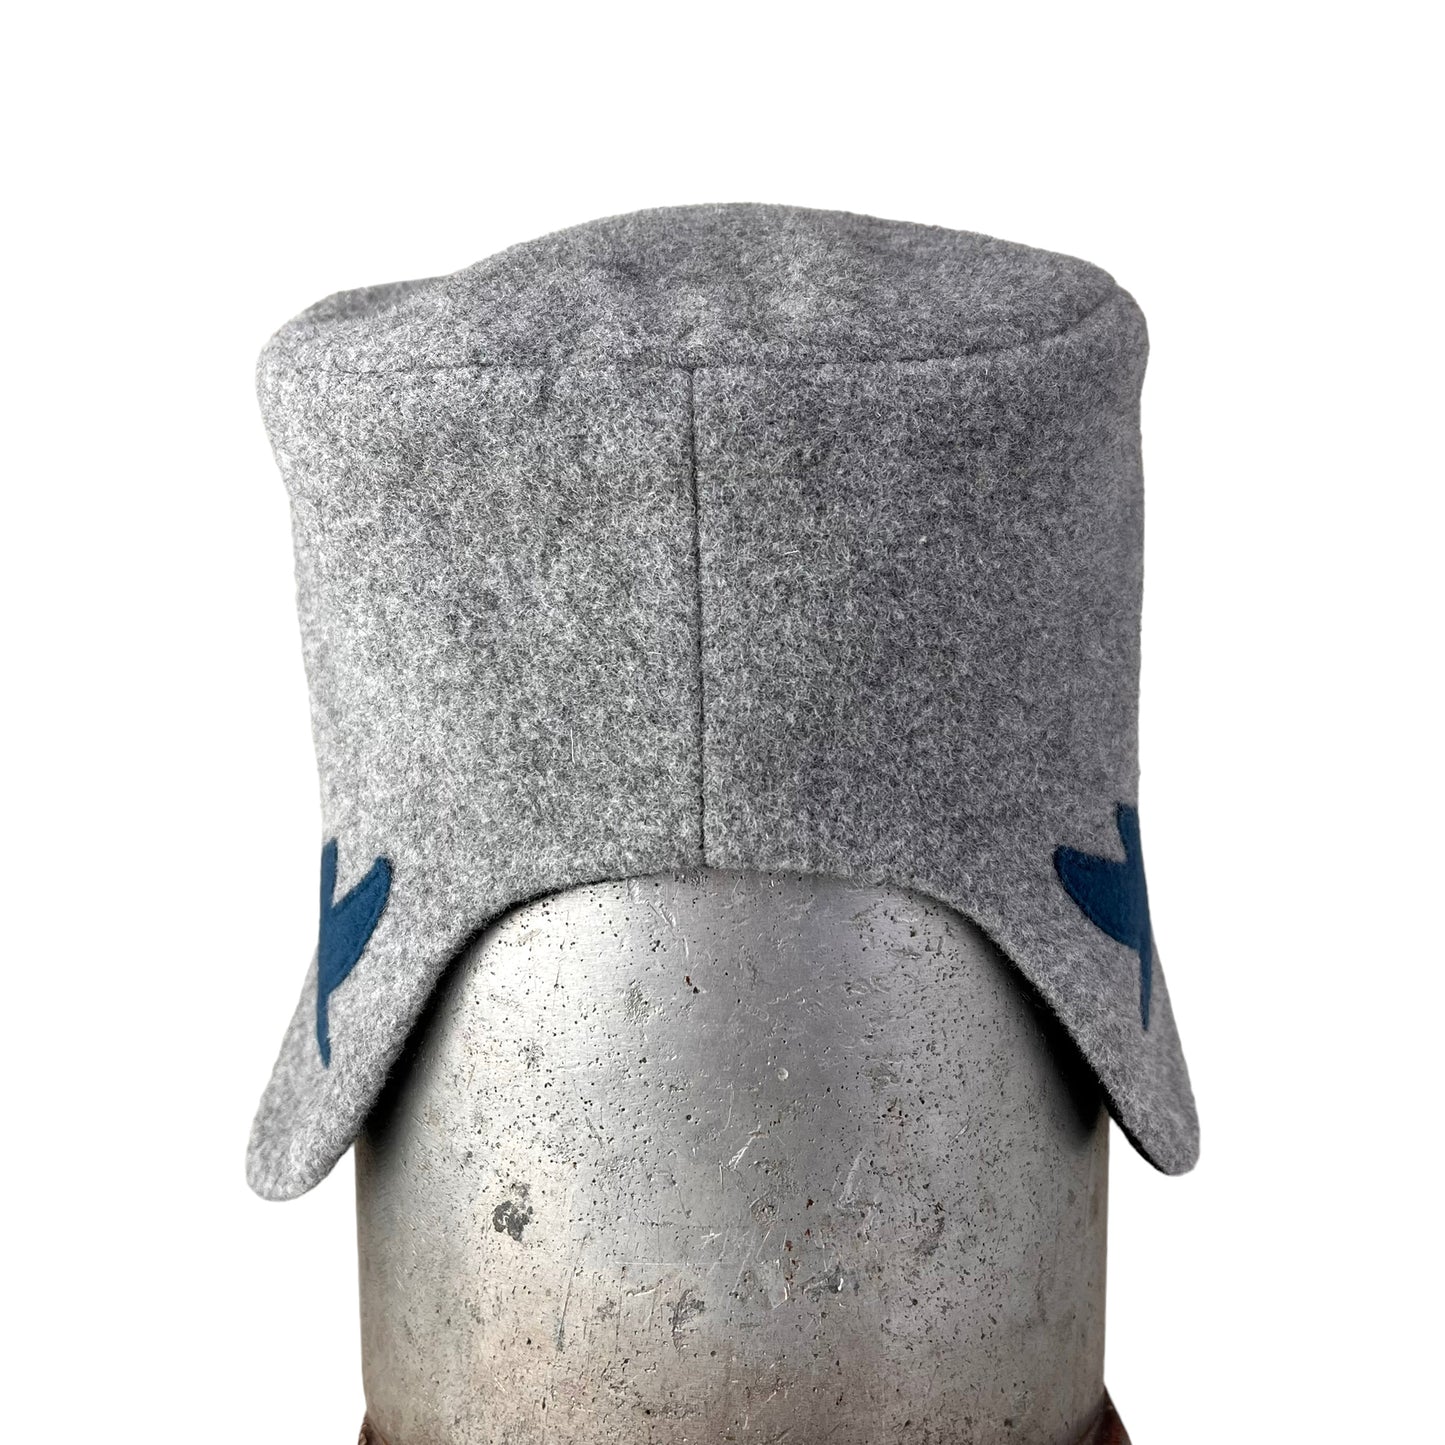 Amelia Wool Ear Flap Womens Helmet Hat Large Light Grey Blue